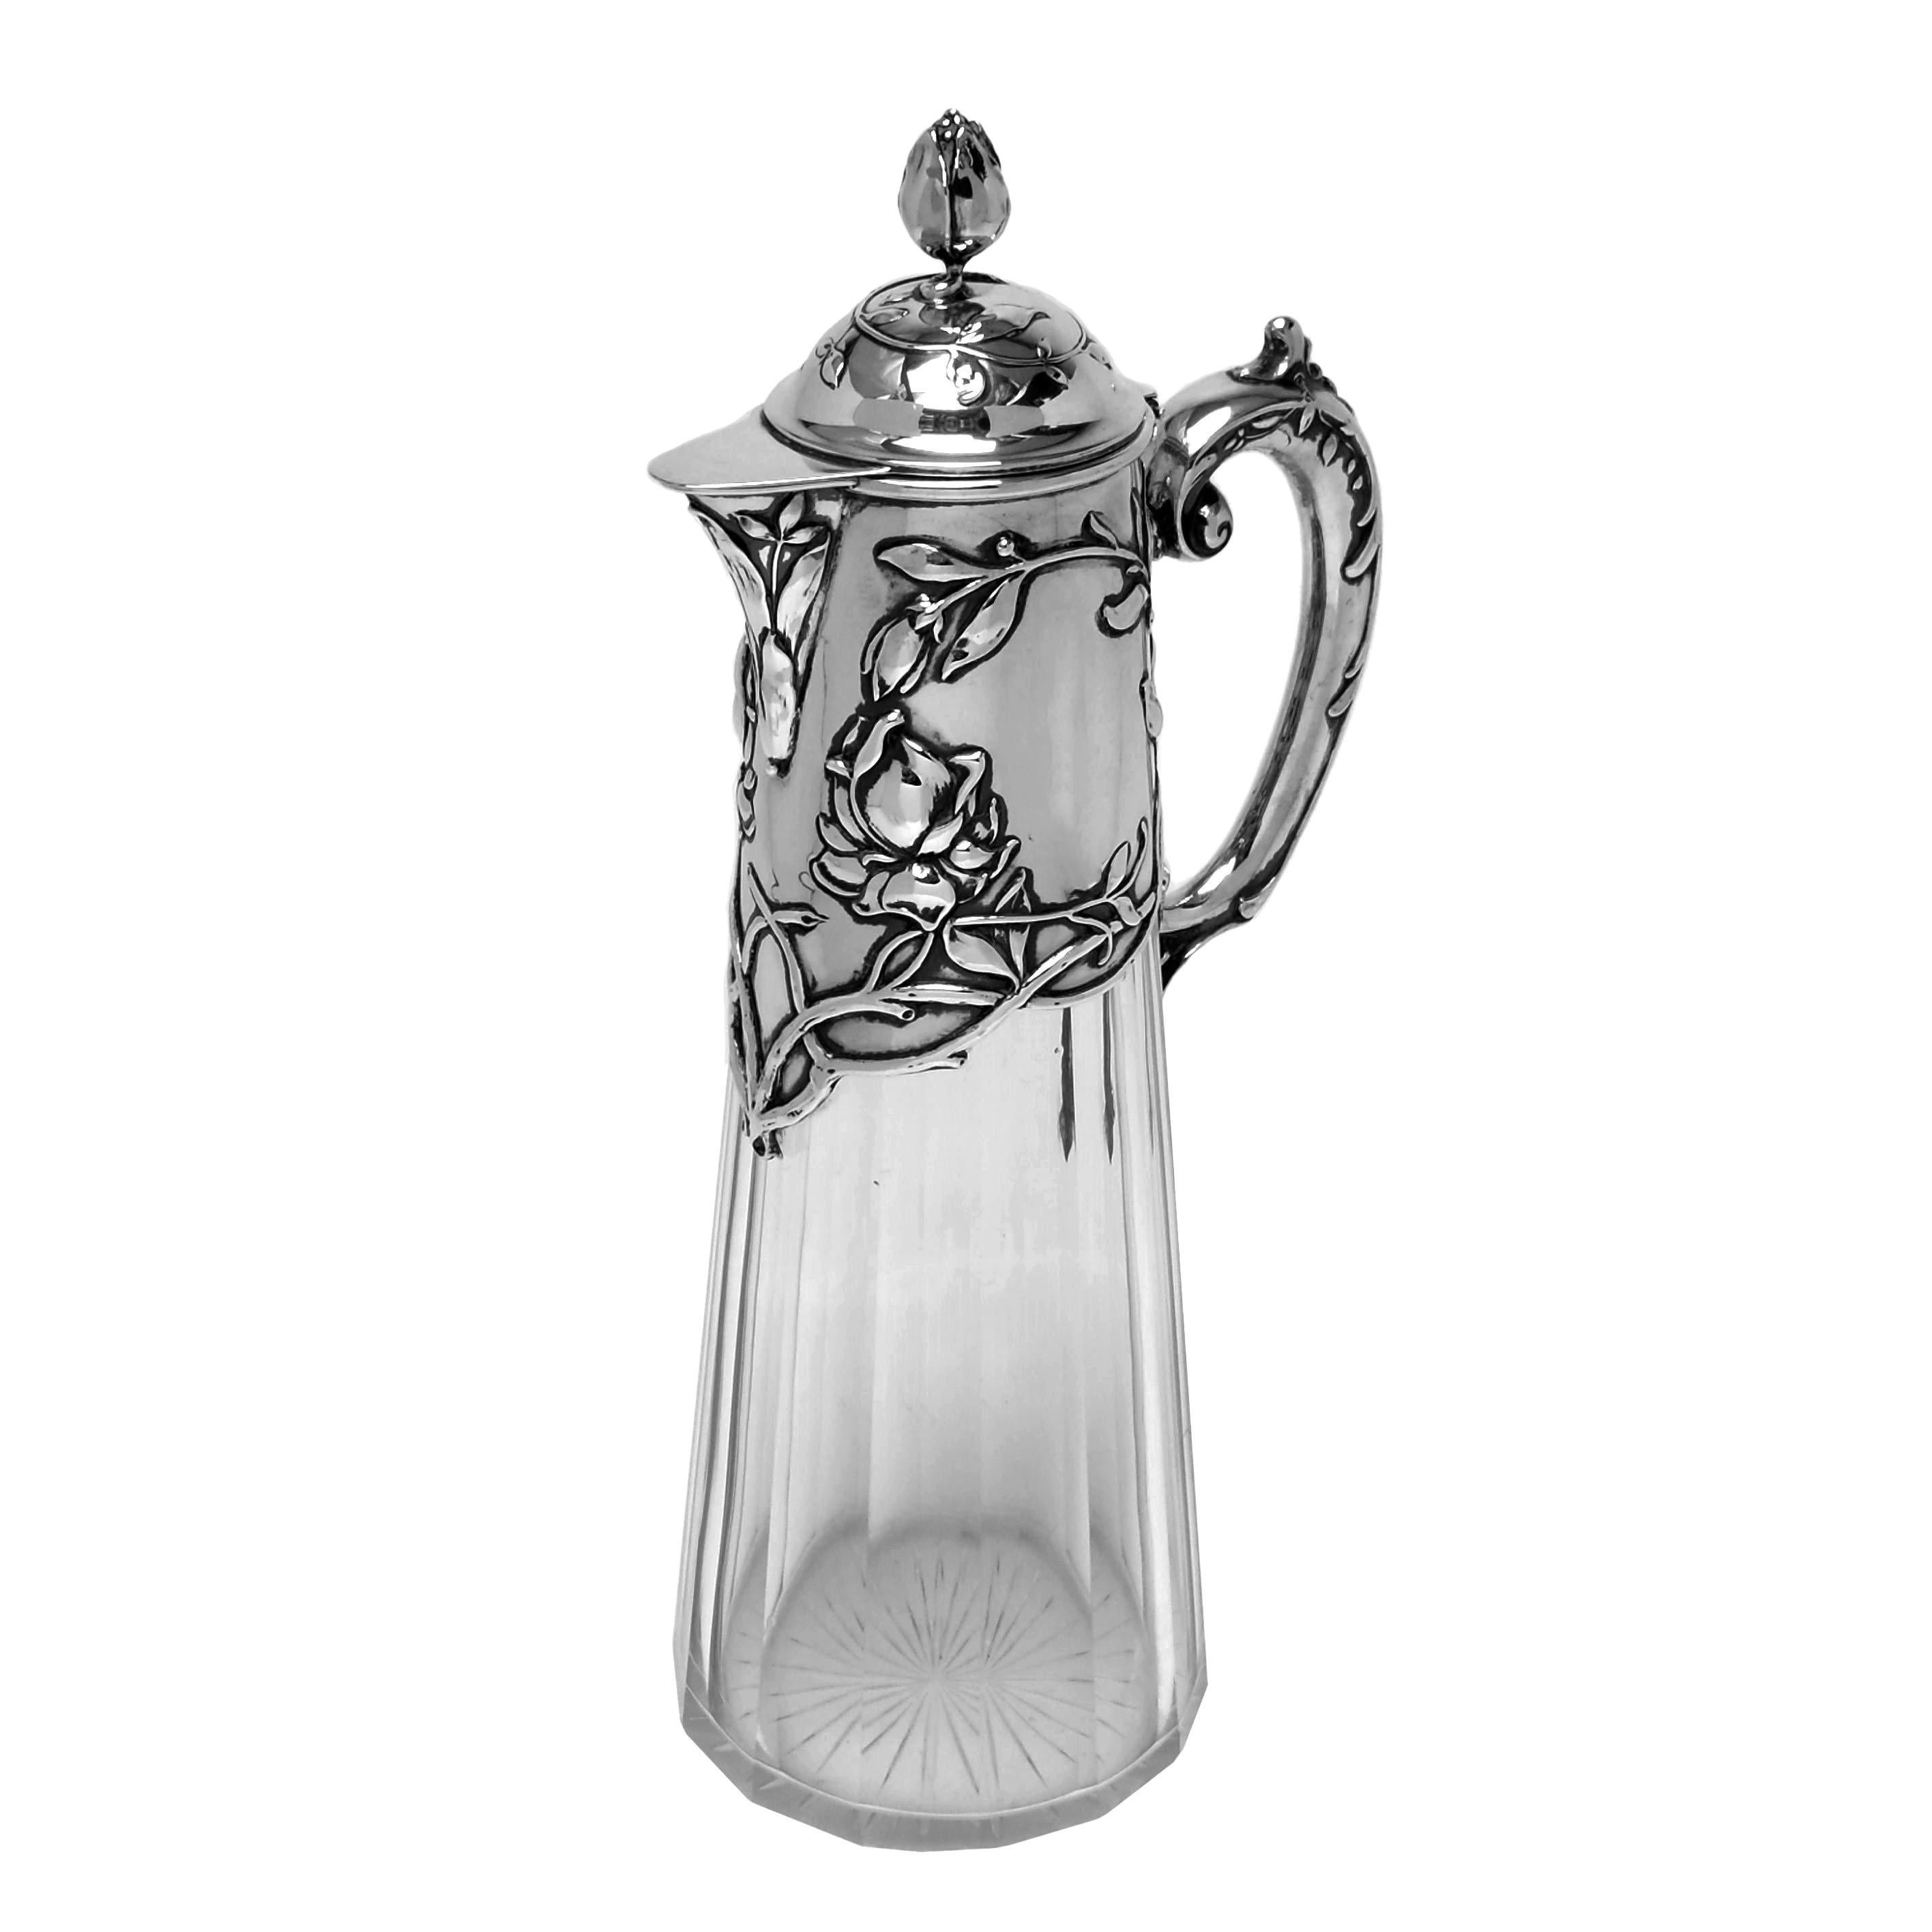 20th Century Pair Antique Art Nouveau Silver & Glass Claret Jugs circa 1900 German Jugendstil